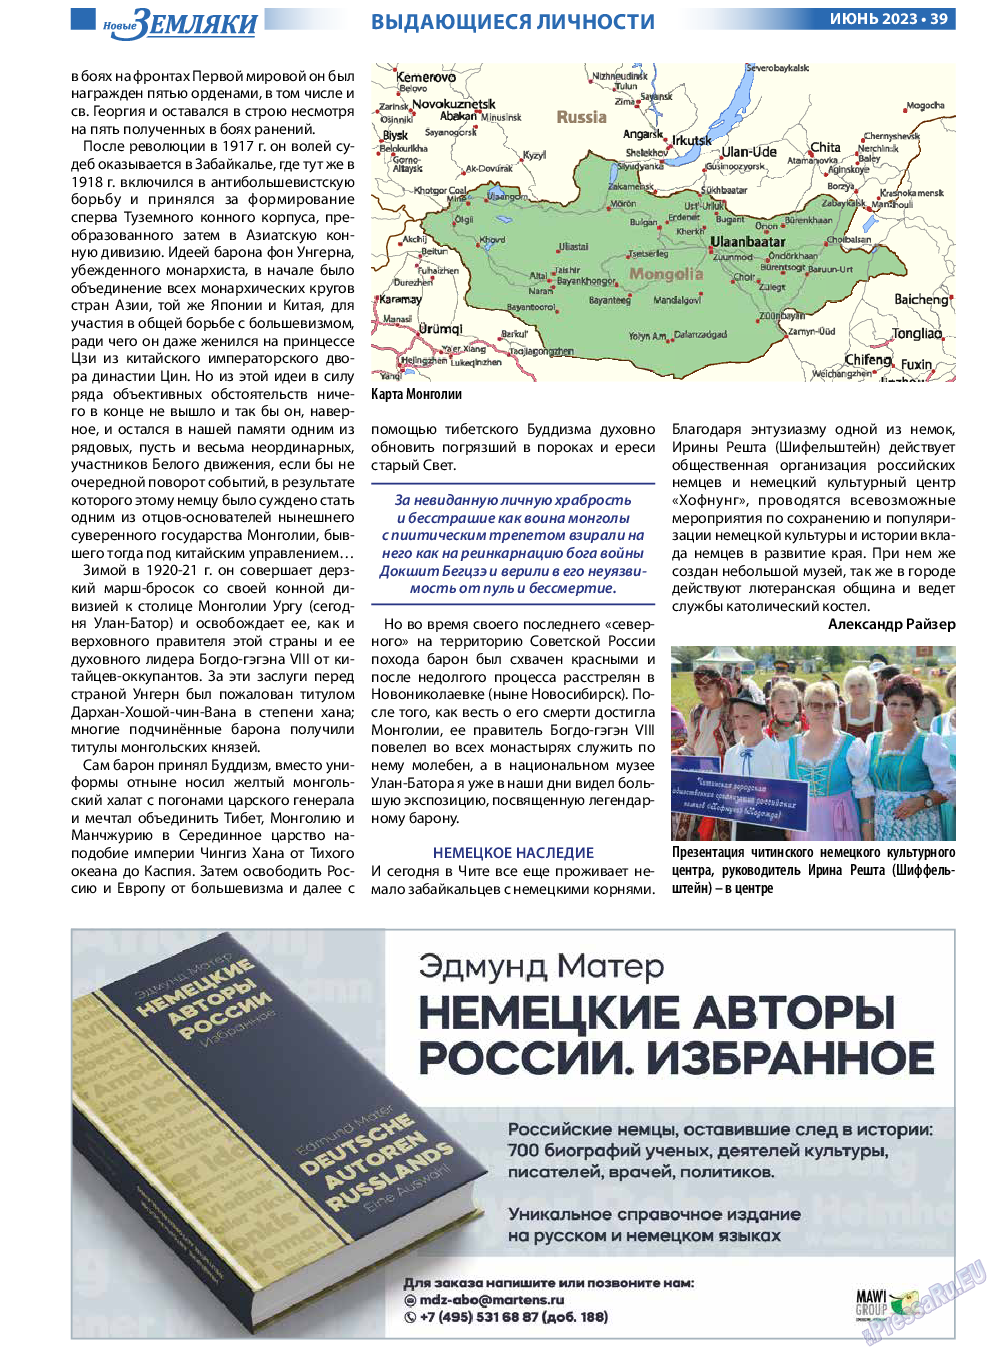 Новые Земляки, газета. 2023 №6 стр.39